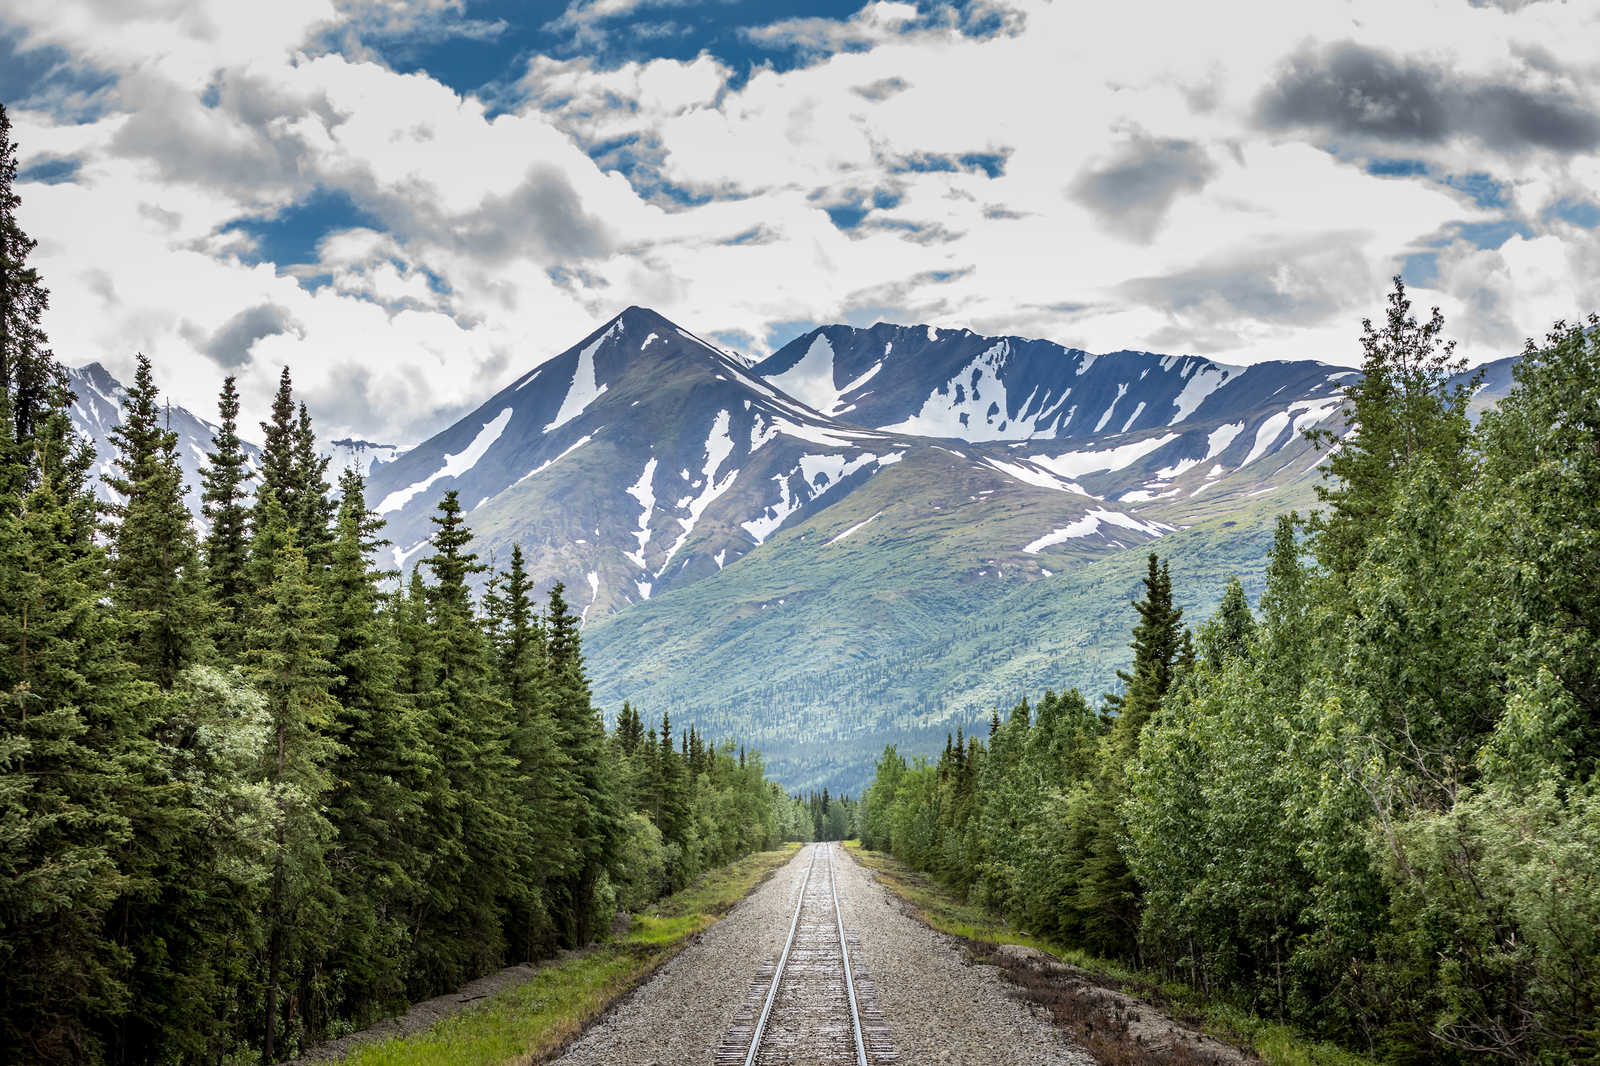             Leinwandbild mit Zuggleisen durch einen Wald am Gebirge – 0,90 m x 0,60 m
        